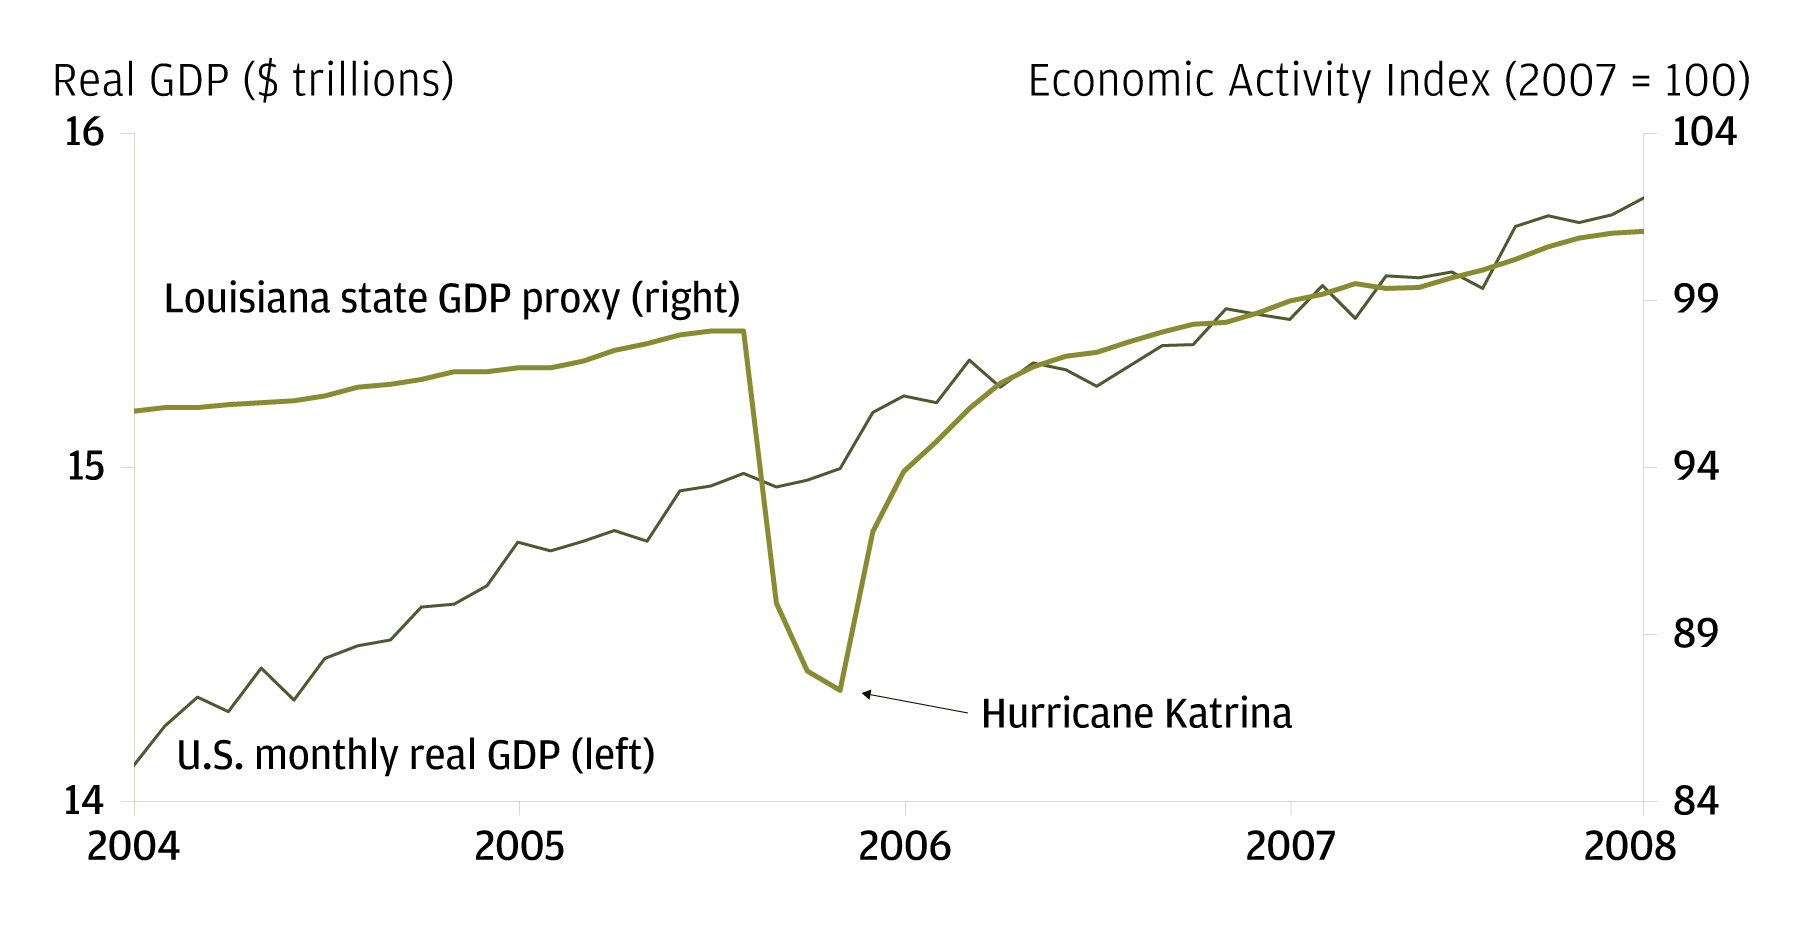 Economic Activity Index